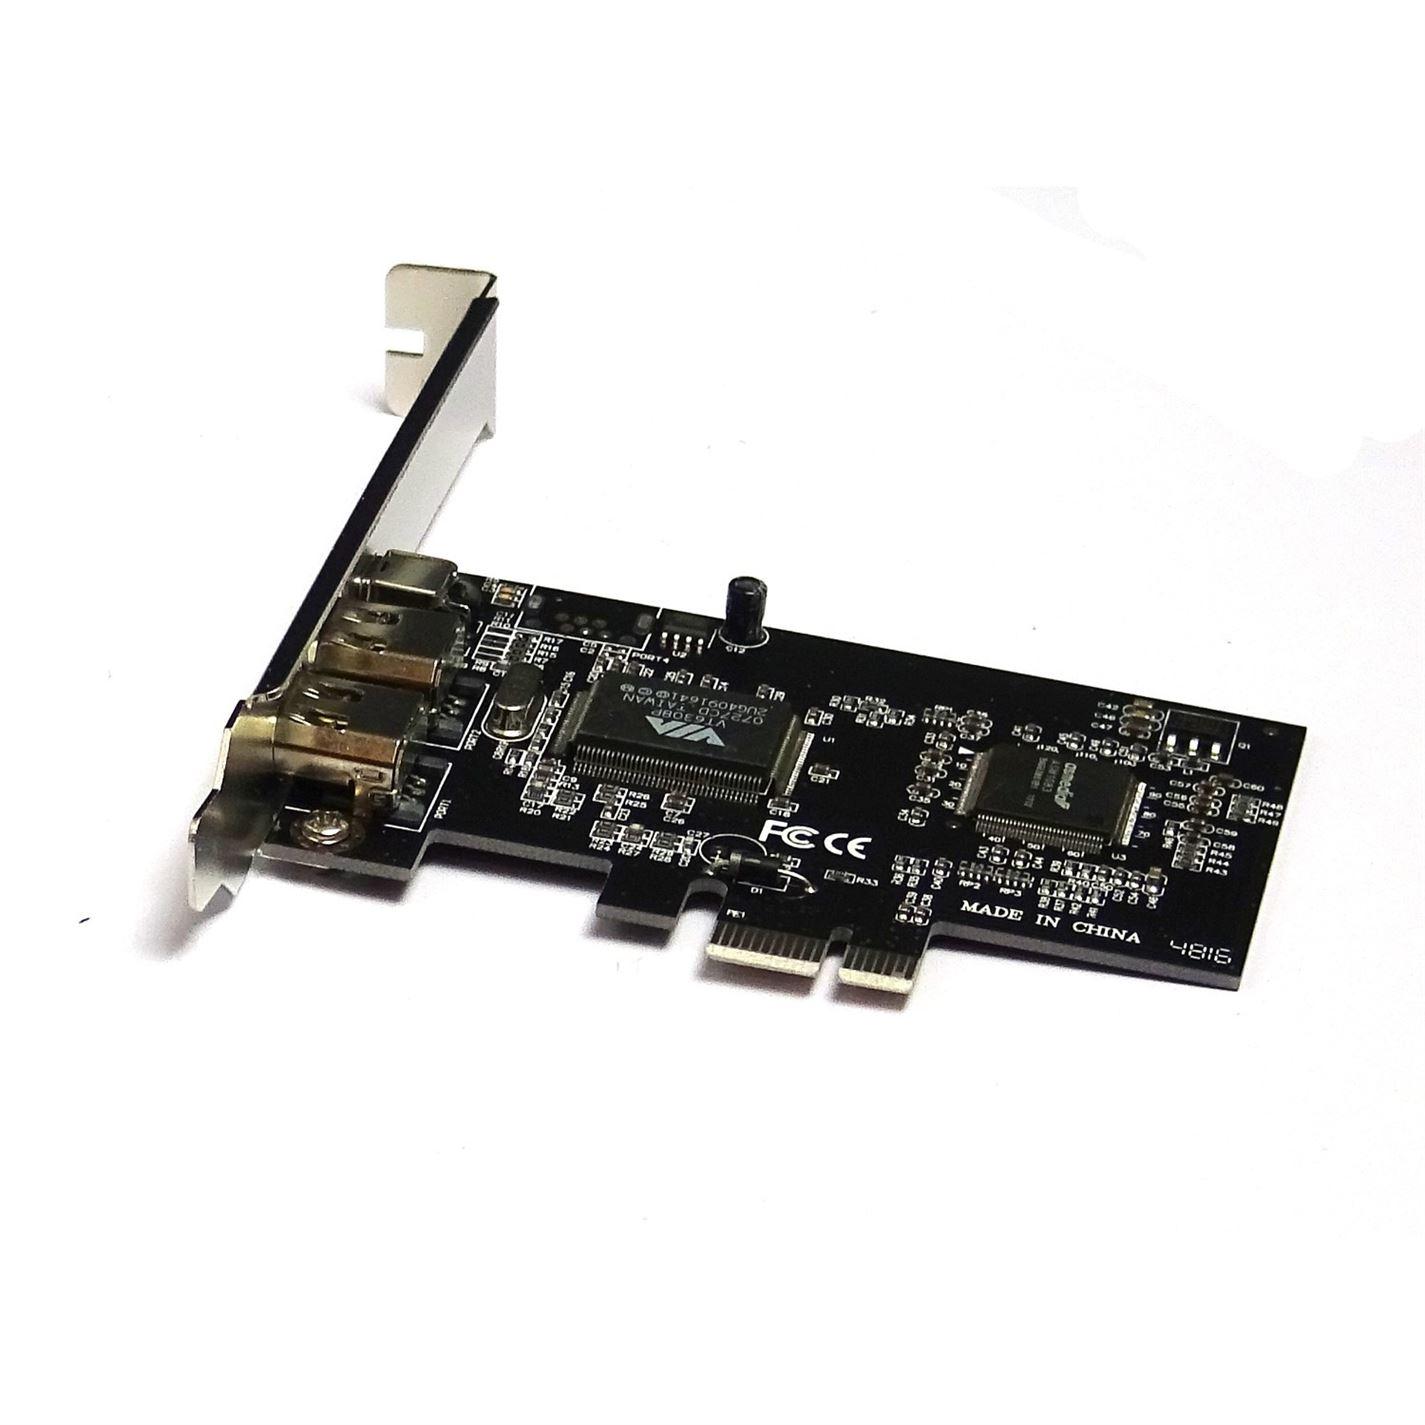 PCI Express x1 PCI-E FireWire IEEE1394 Controller Card 3 Port For Desktop - UK Seller